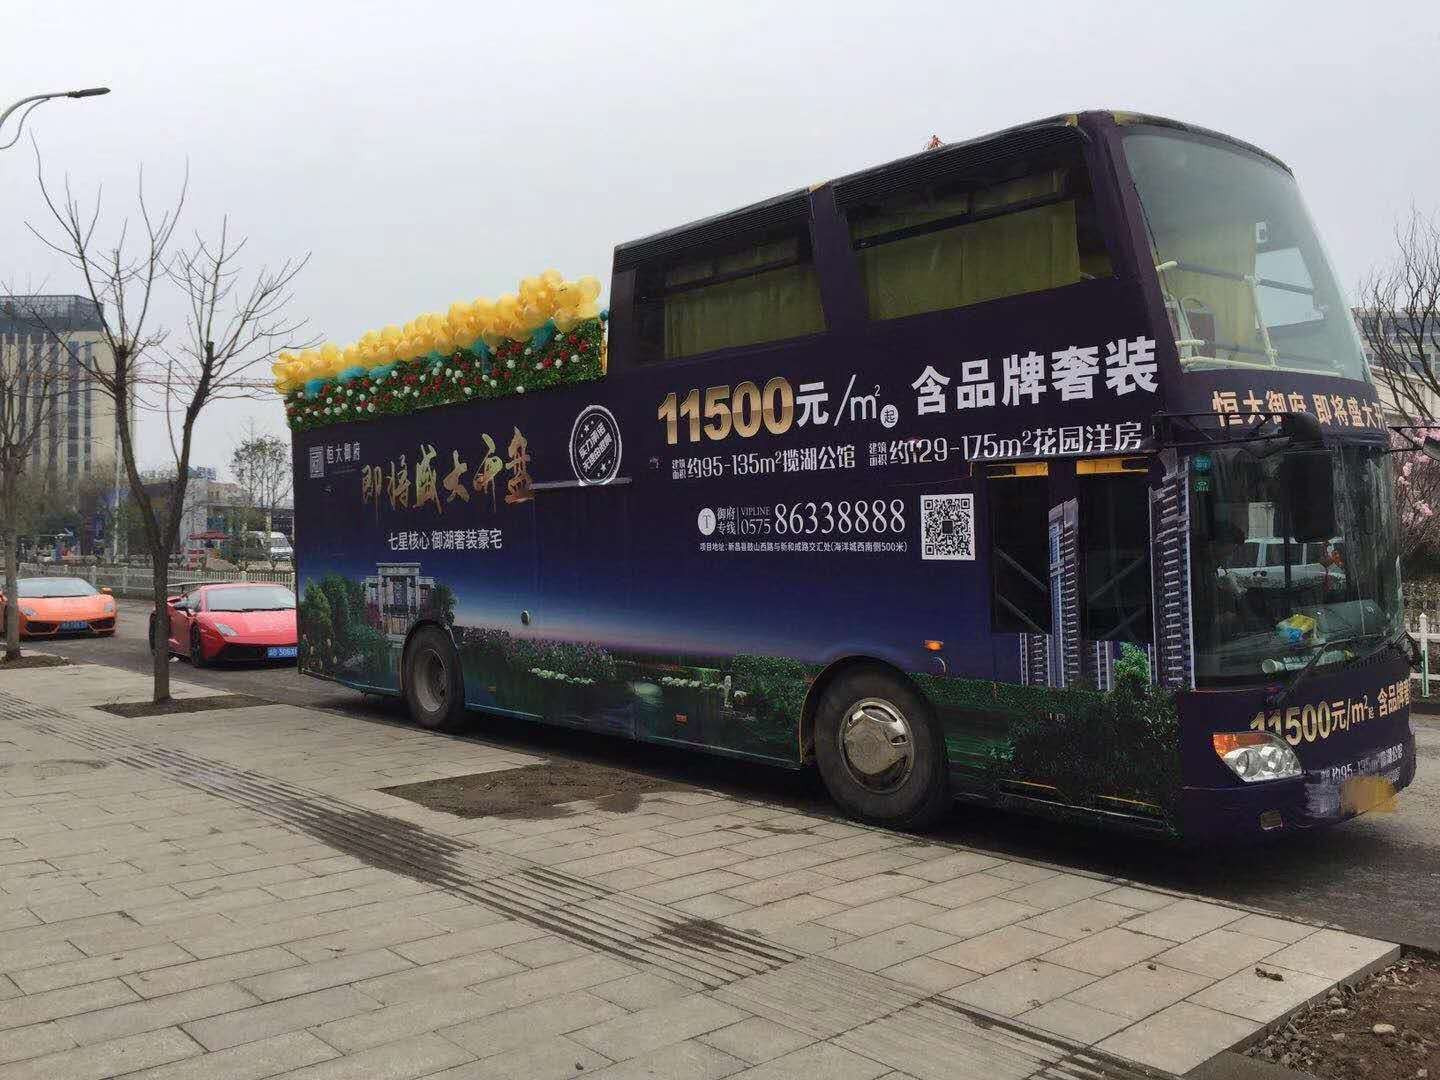 2018年1月6日到7日，安徽良友双层敞篷巡游巴士来到浙江省绍兴市新昌县